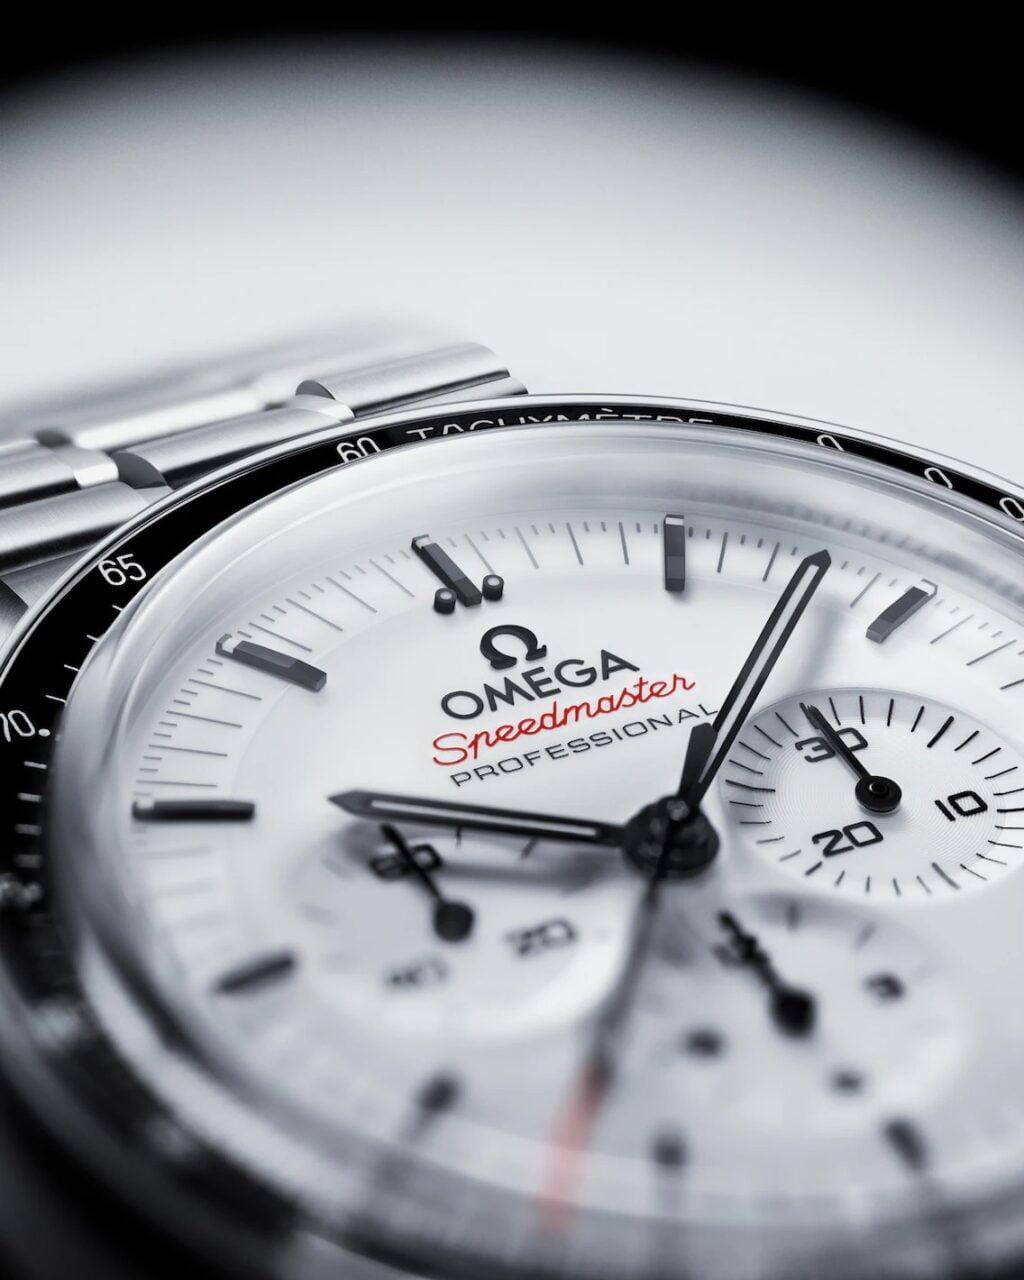 Zegarek Omega Speedmaster z białą tarczą, czarnymi wskazówkami i czerwonym akcentem na sekundniku, bransoletą z metalu.